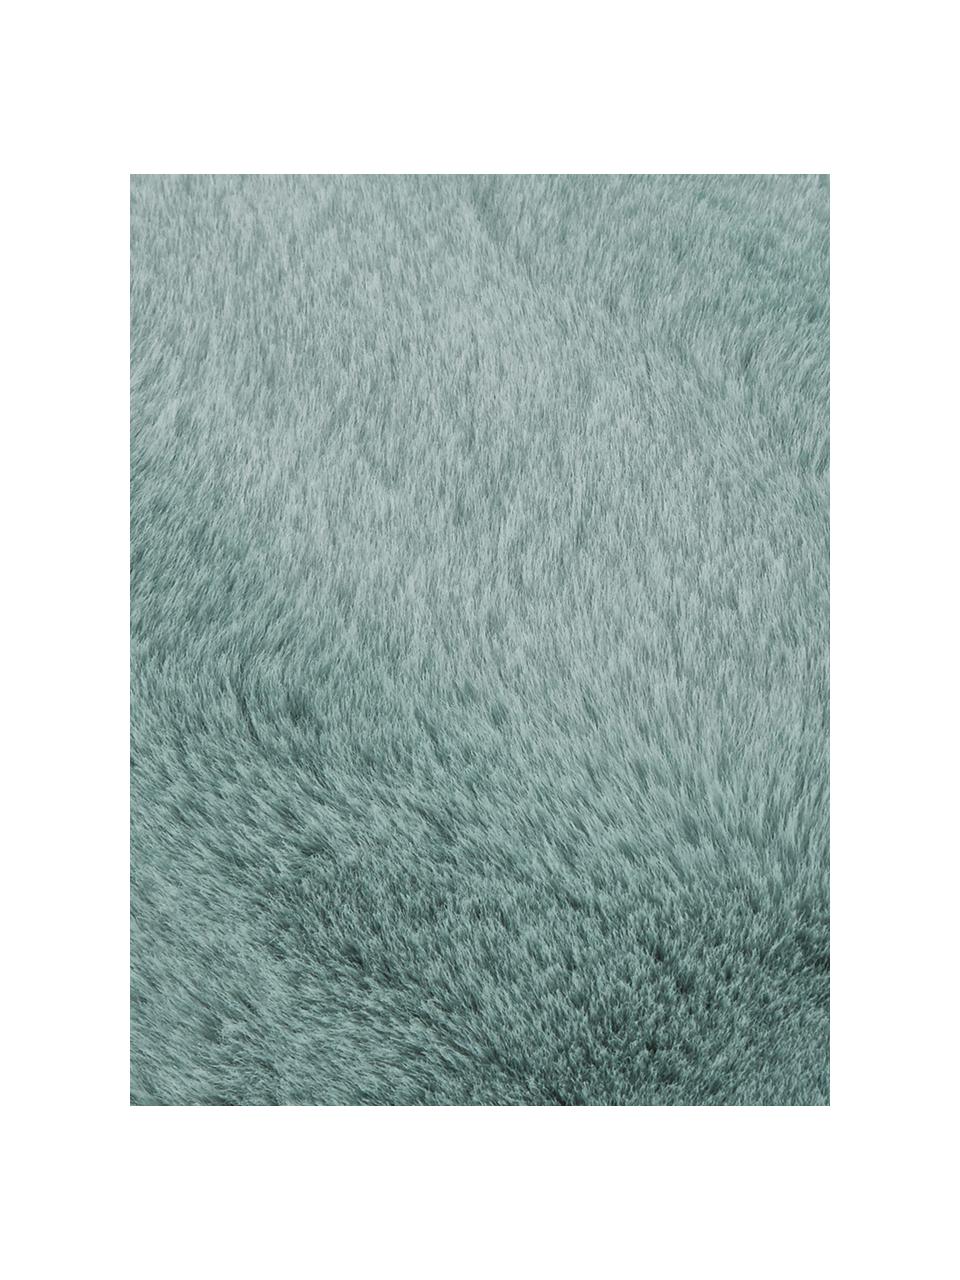 Kuscheldecke Mette aus Kunstfell in Salbeigrün, Vorderseite: 100% Polyester, Rückseite: 100% Polyester, Salbeigrün, 150 x 200 cm